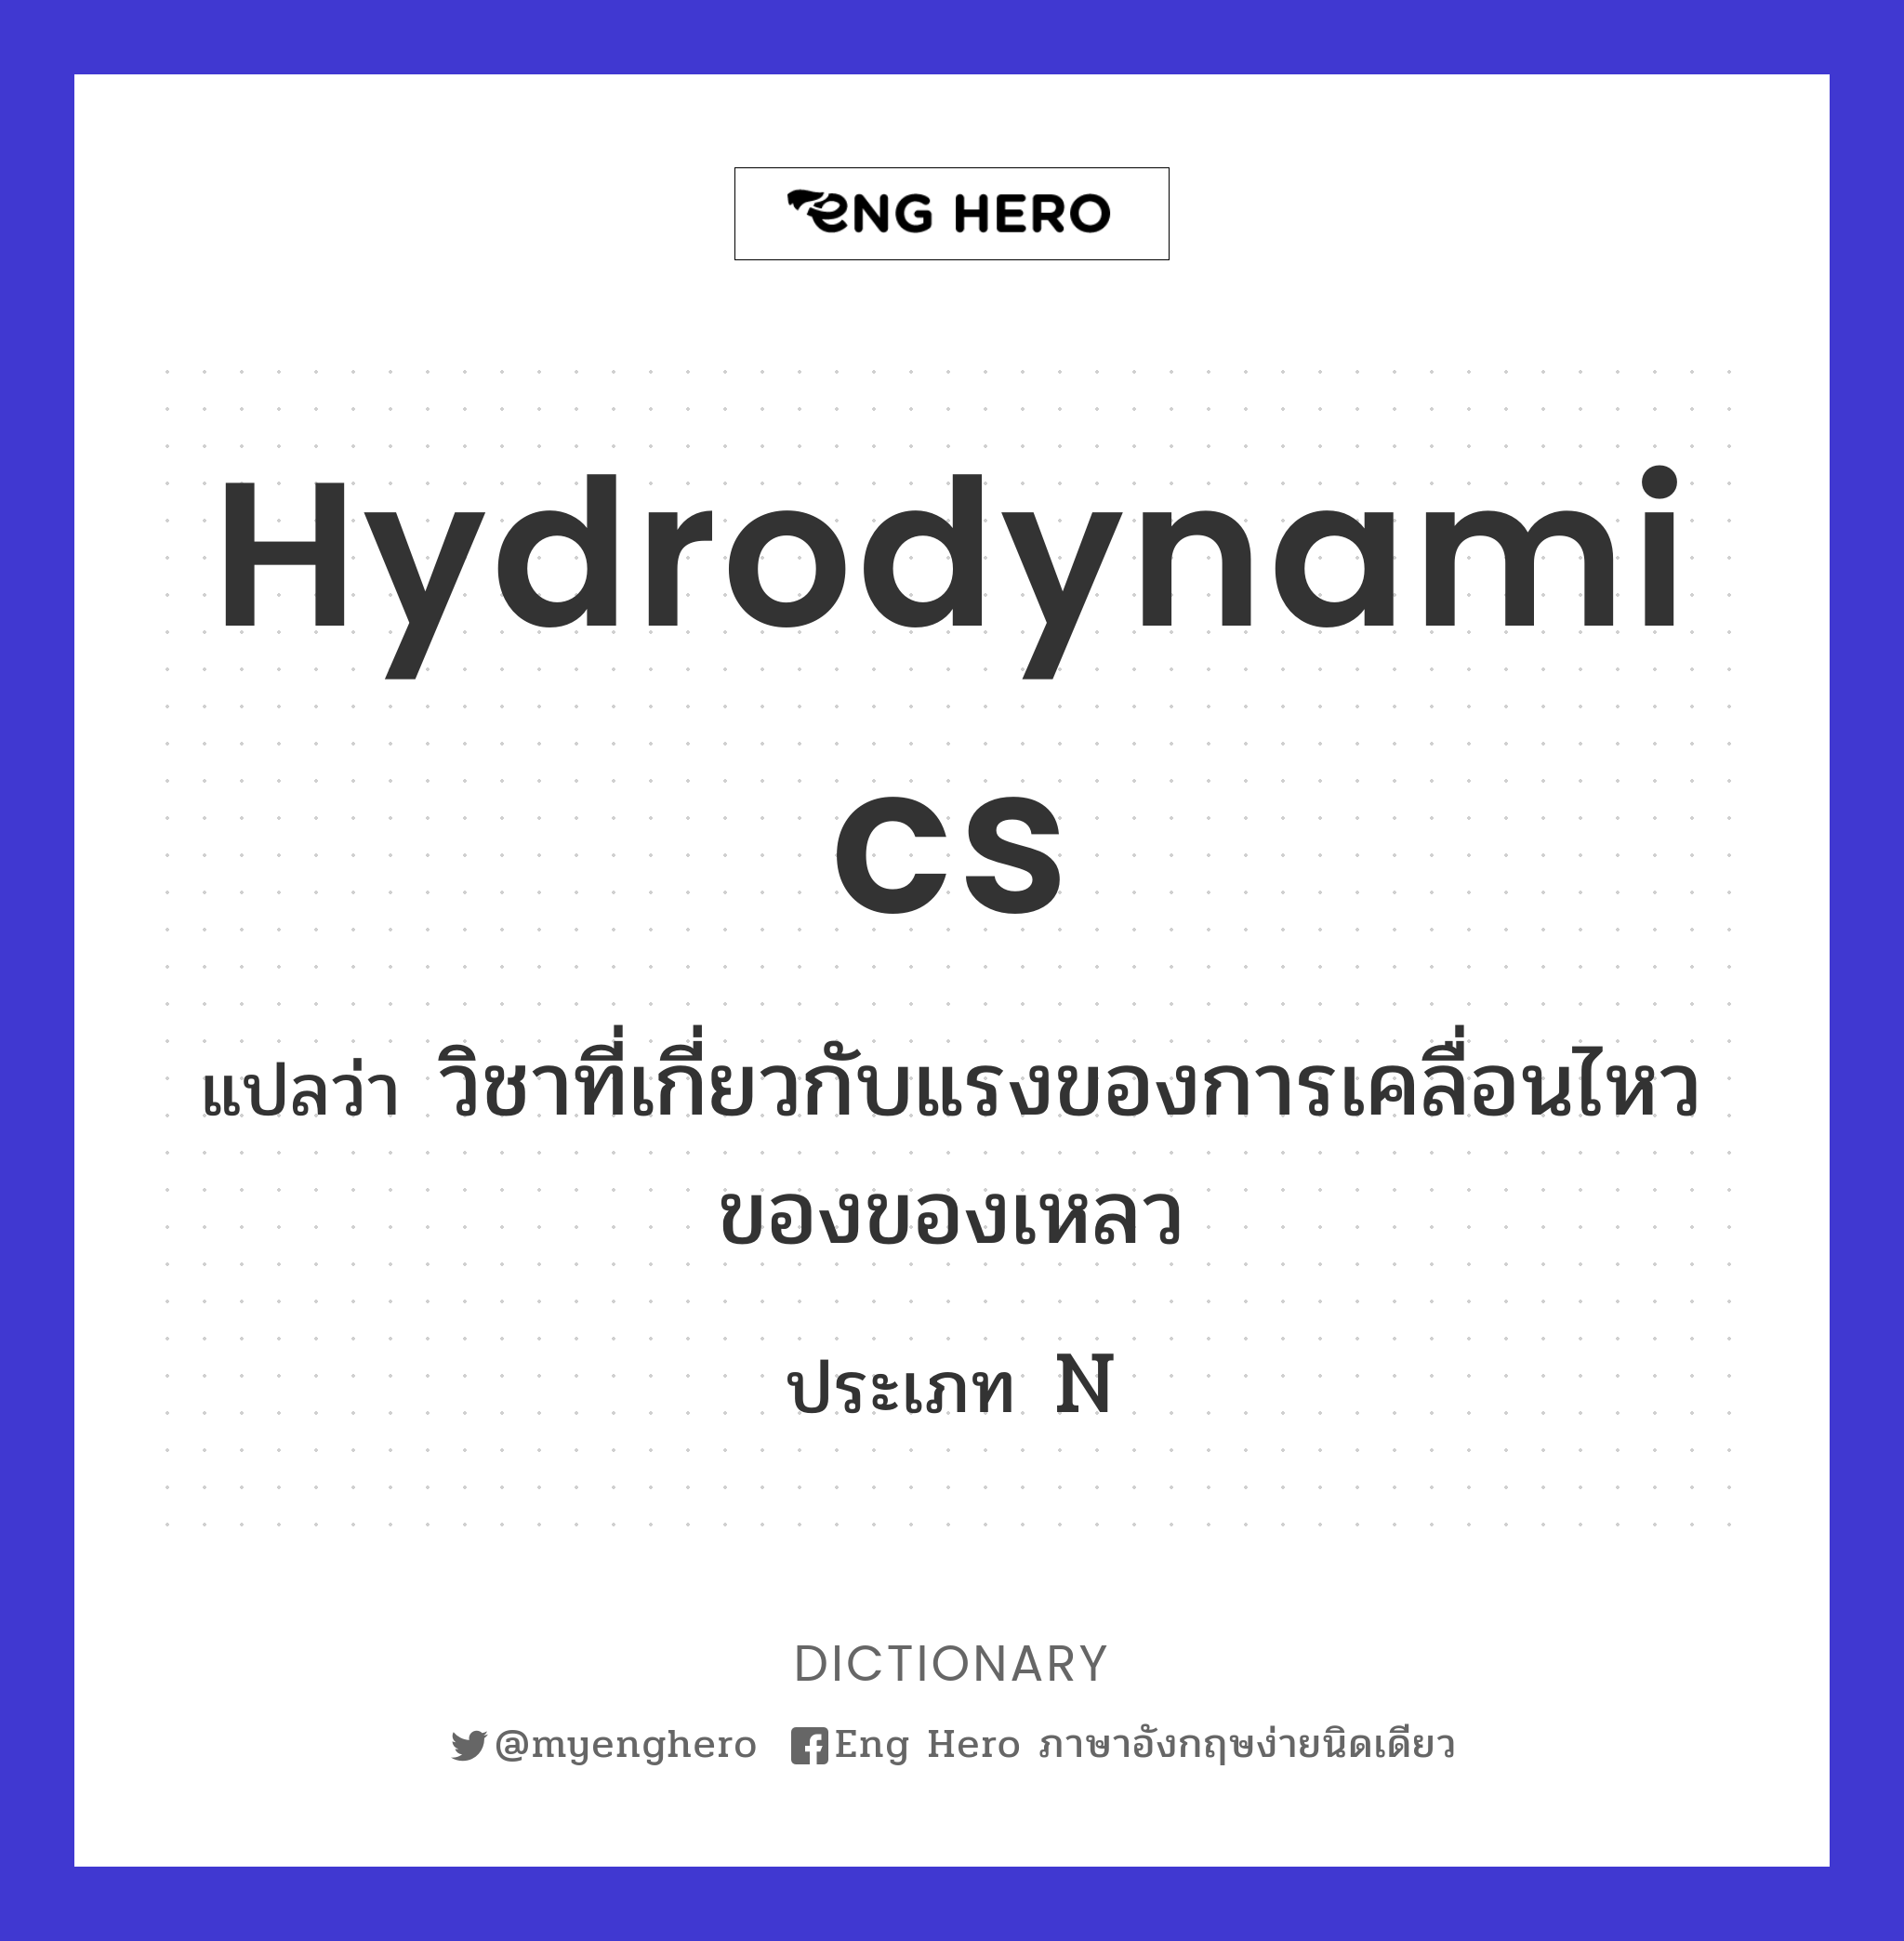 hydrodynamics